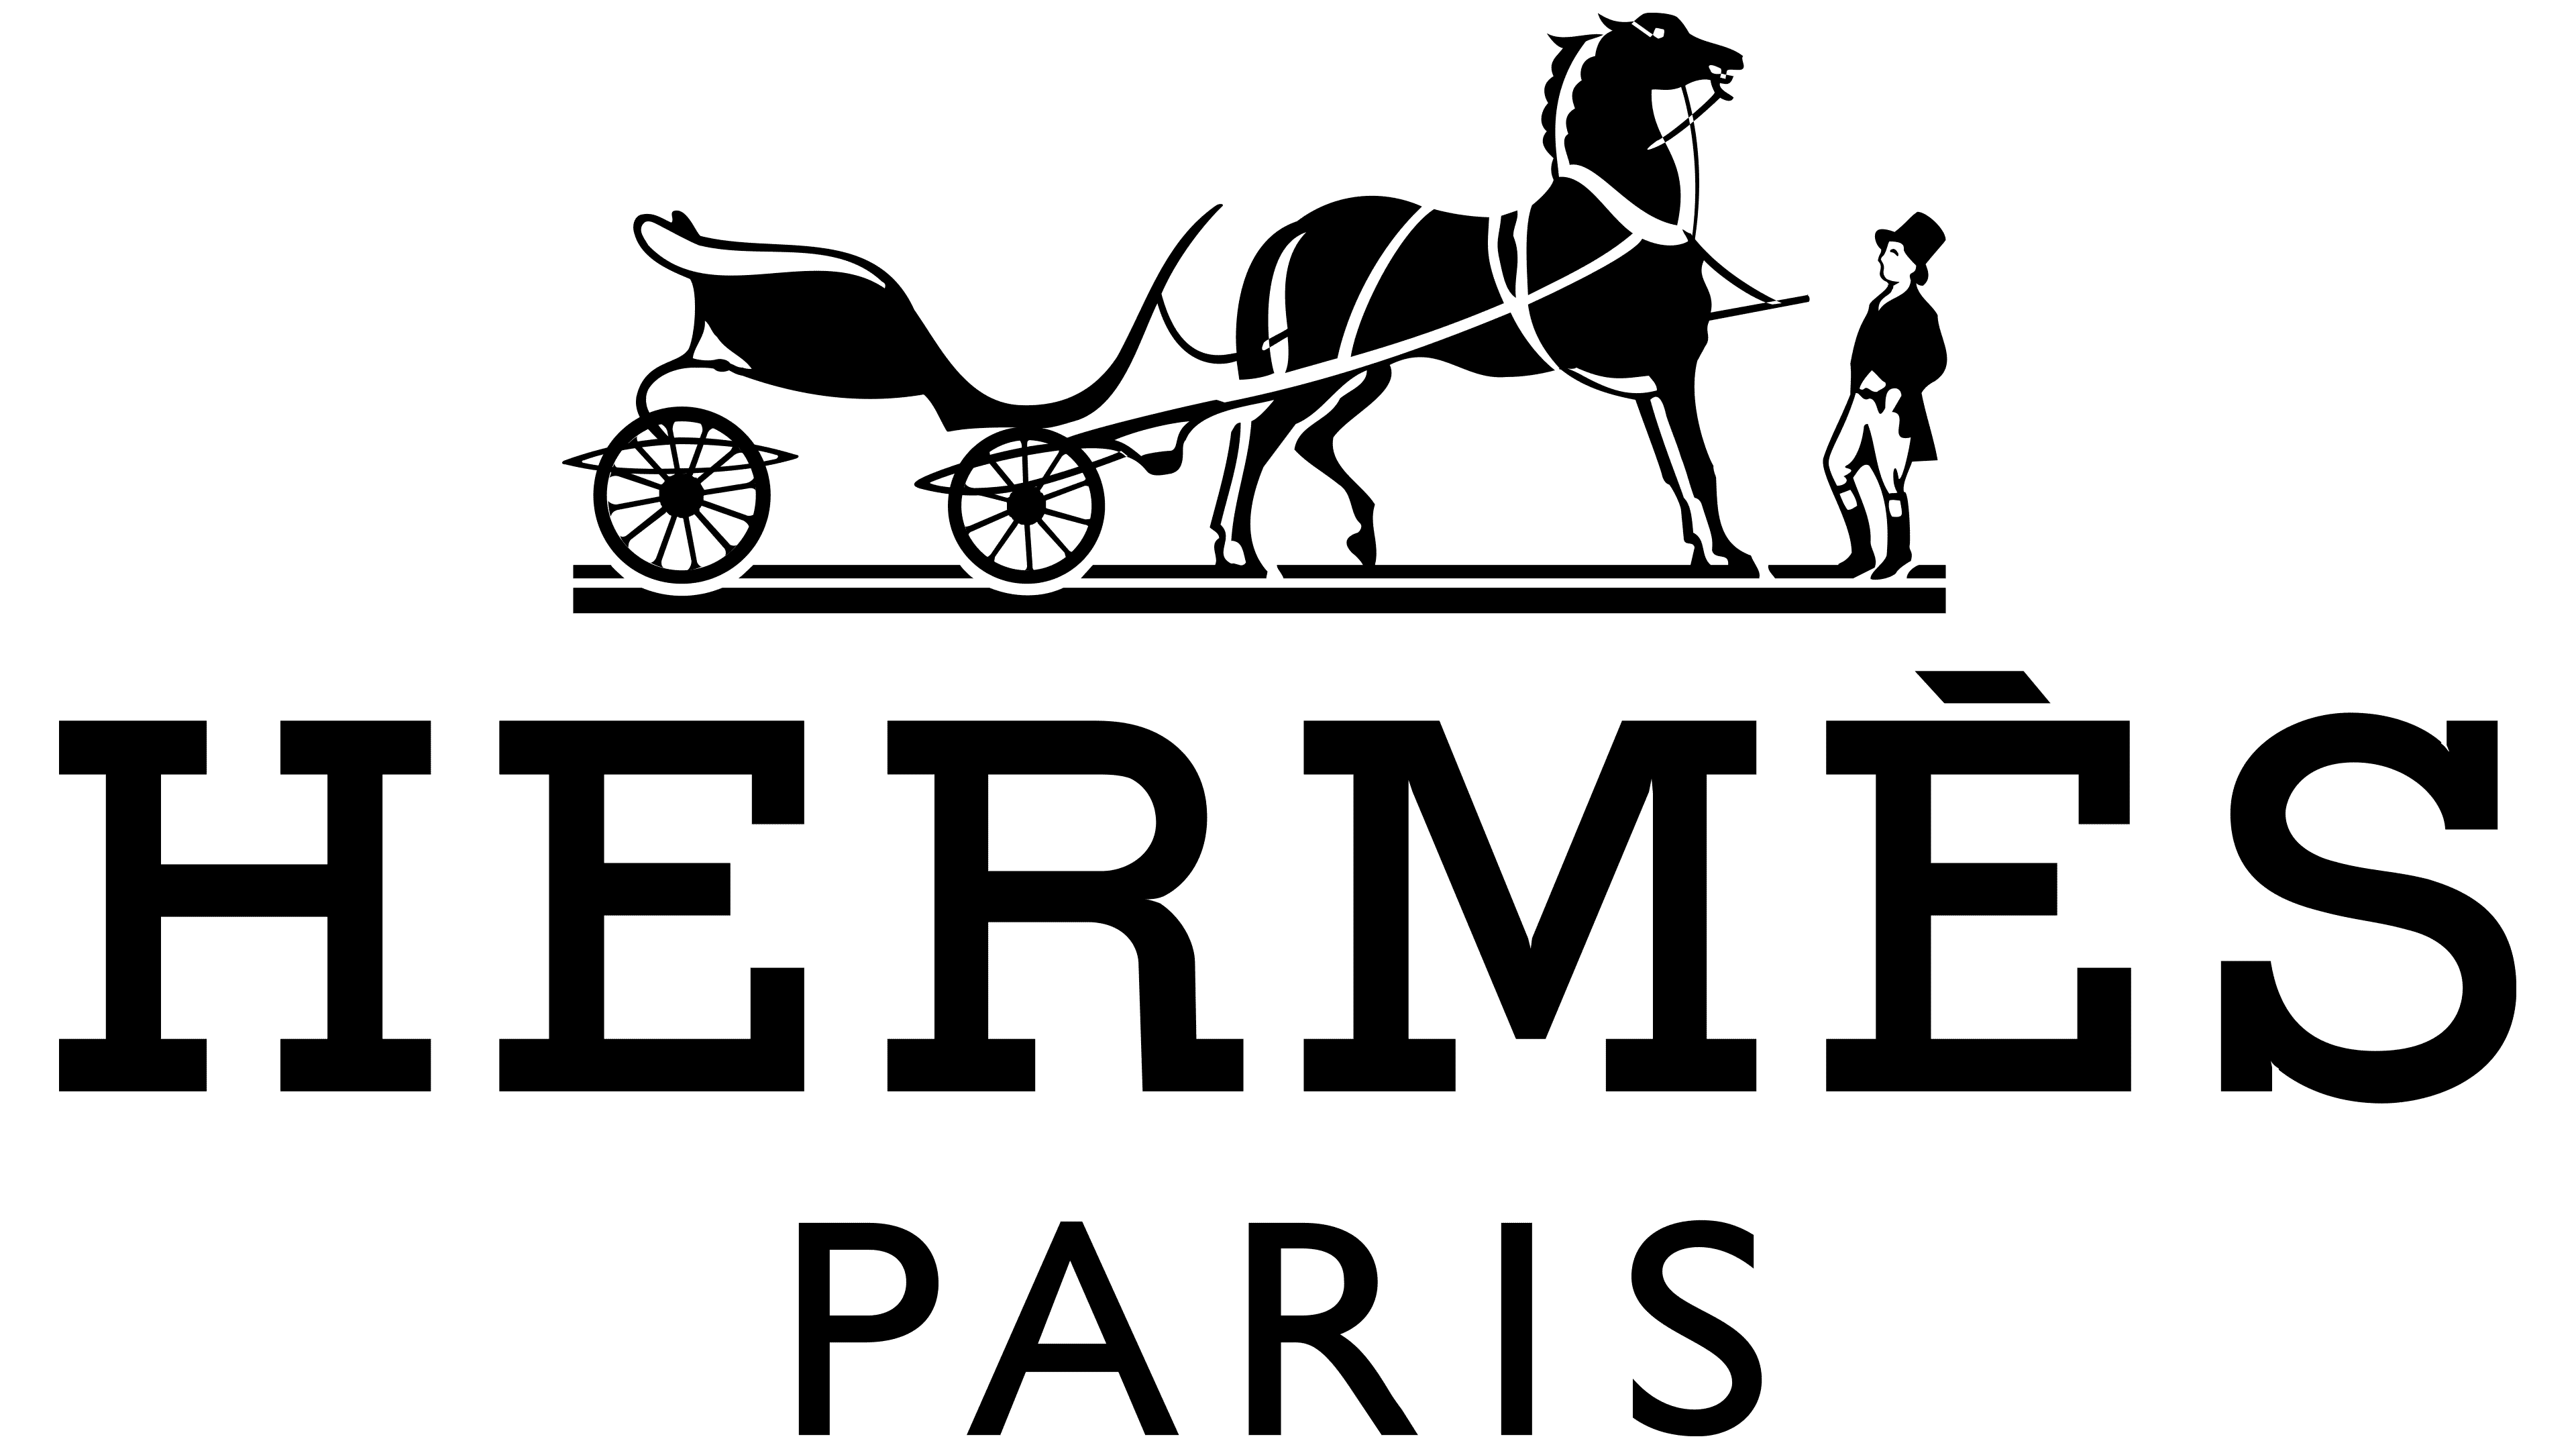 Hermes Finance